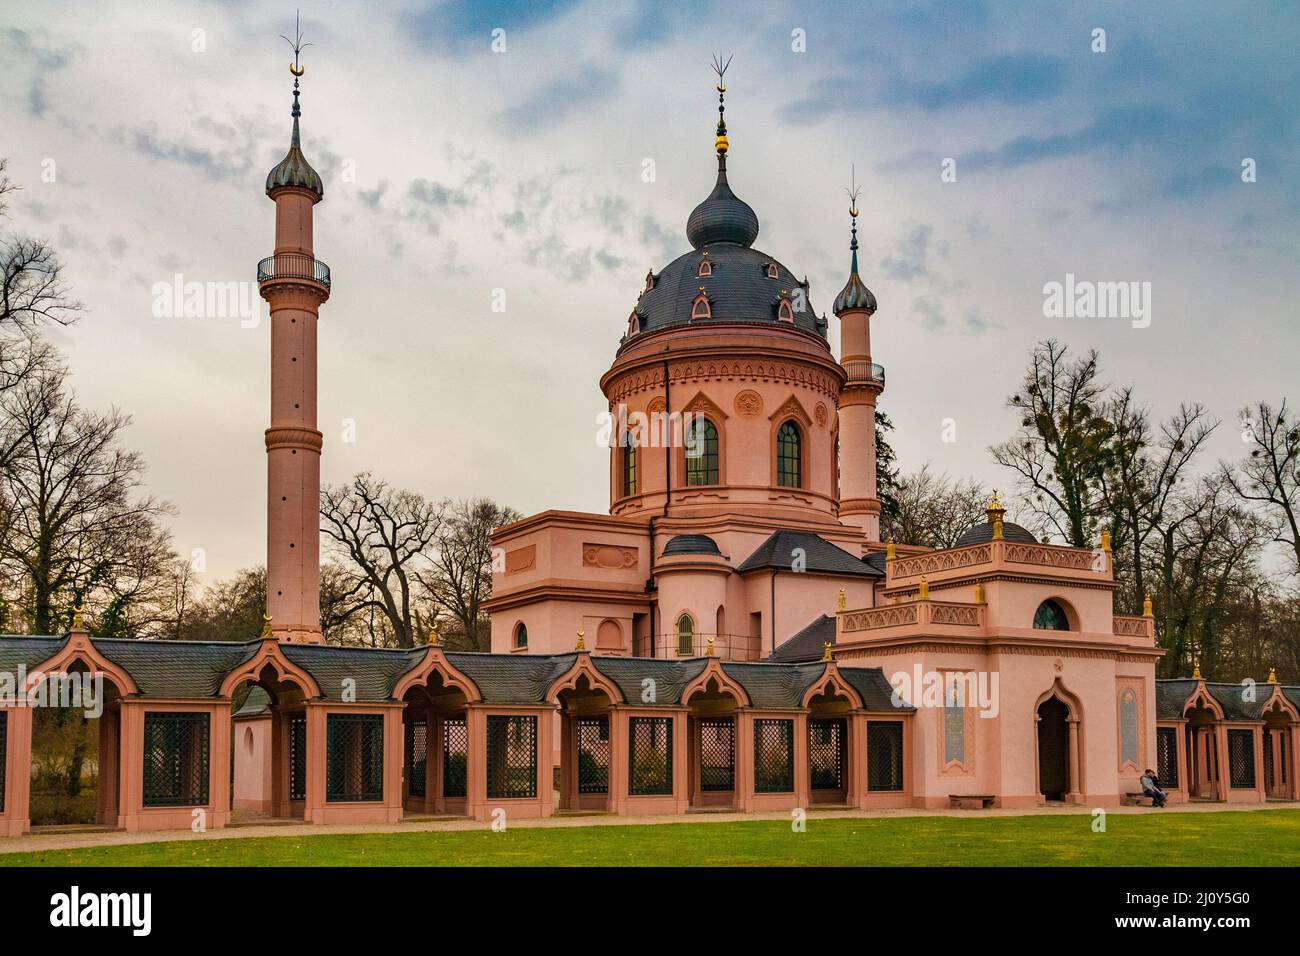 Tolle Aussicht auf die Gartenmoschee vom Innenhof. Die Moschee ist eines der faszinierendsten Gebäude im Schwetzinger Schlossgarten in... Stockfoto